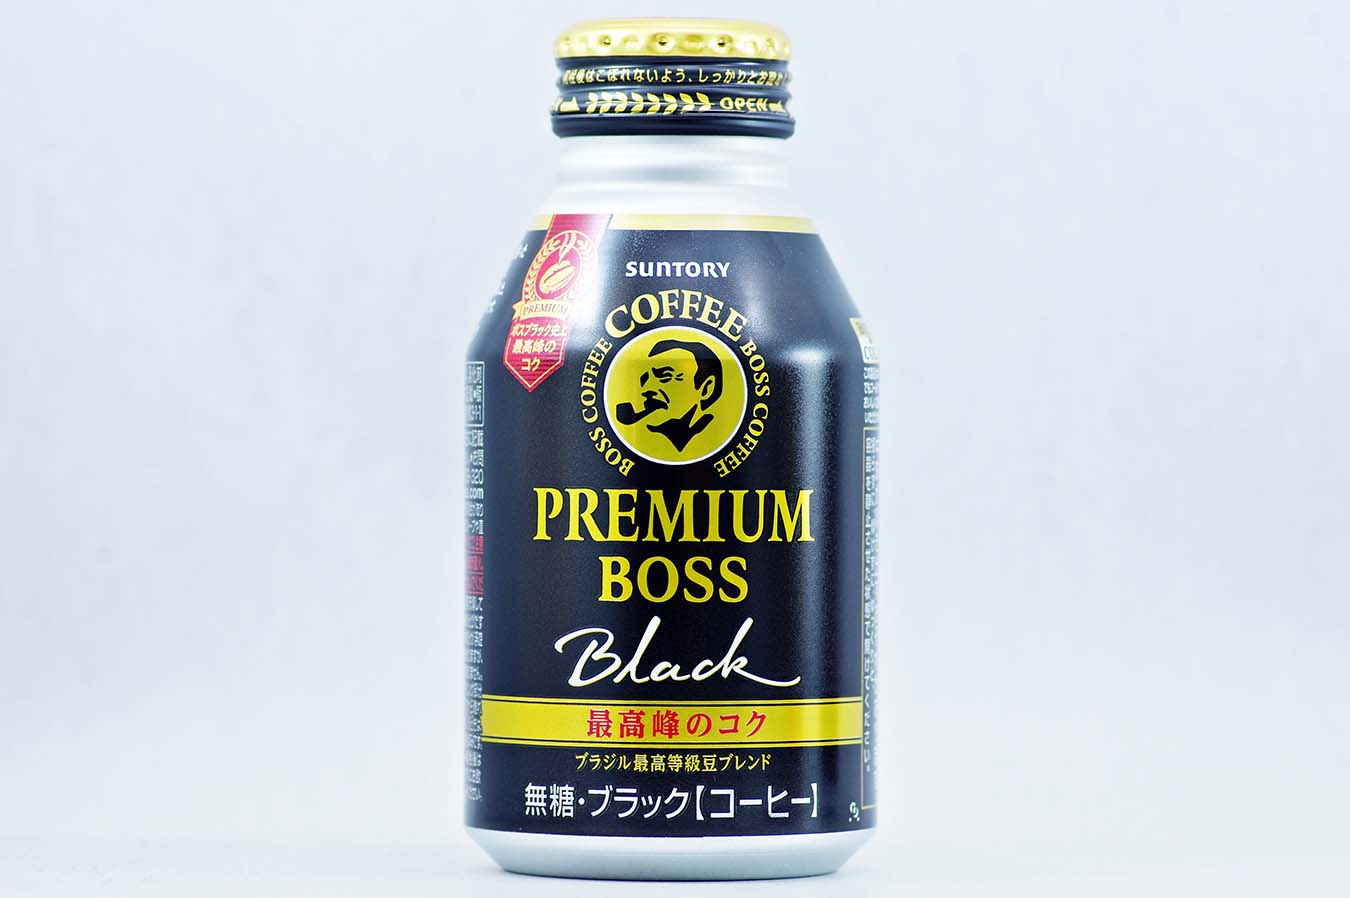 プレミアムボス ブラック 285gボトル缶 2015年9月